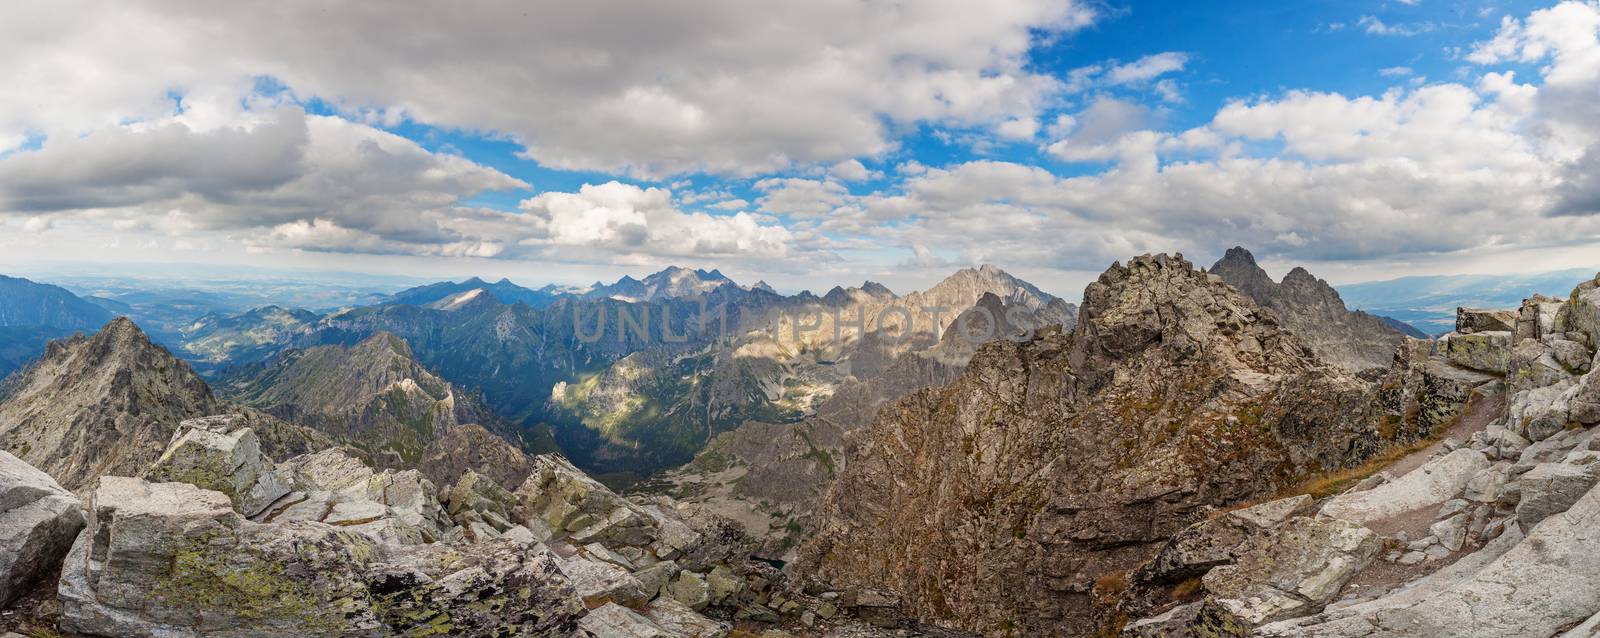 Panoramic view on high Tatra Mountains, Slovakia, Europe by igor_stramyk